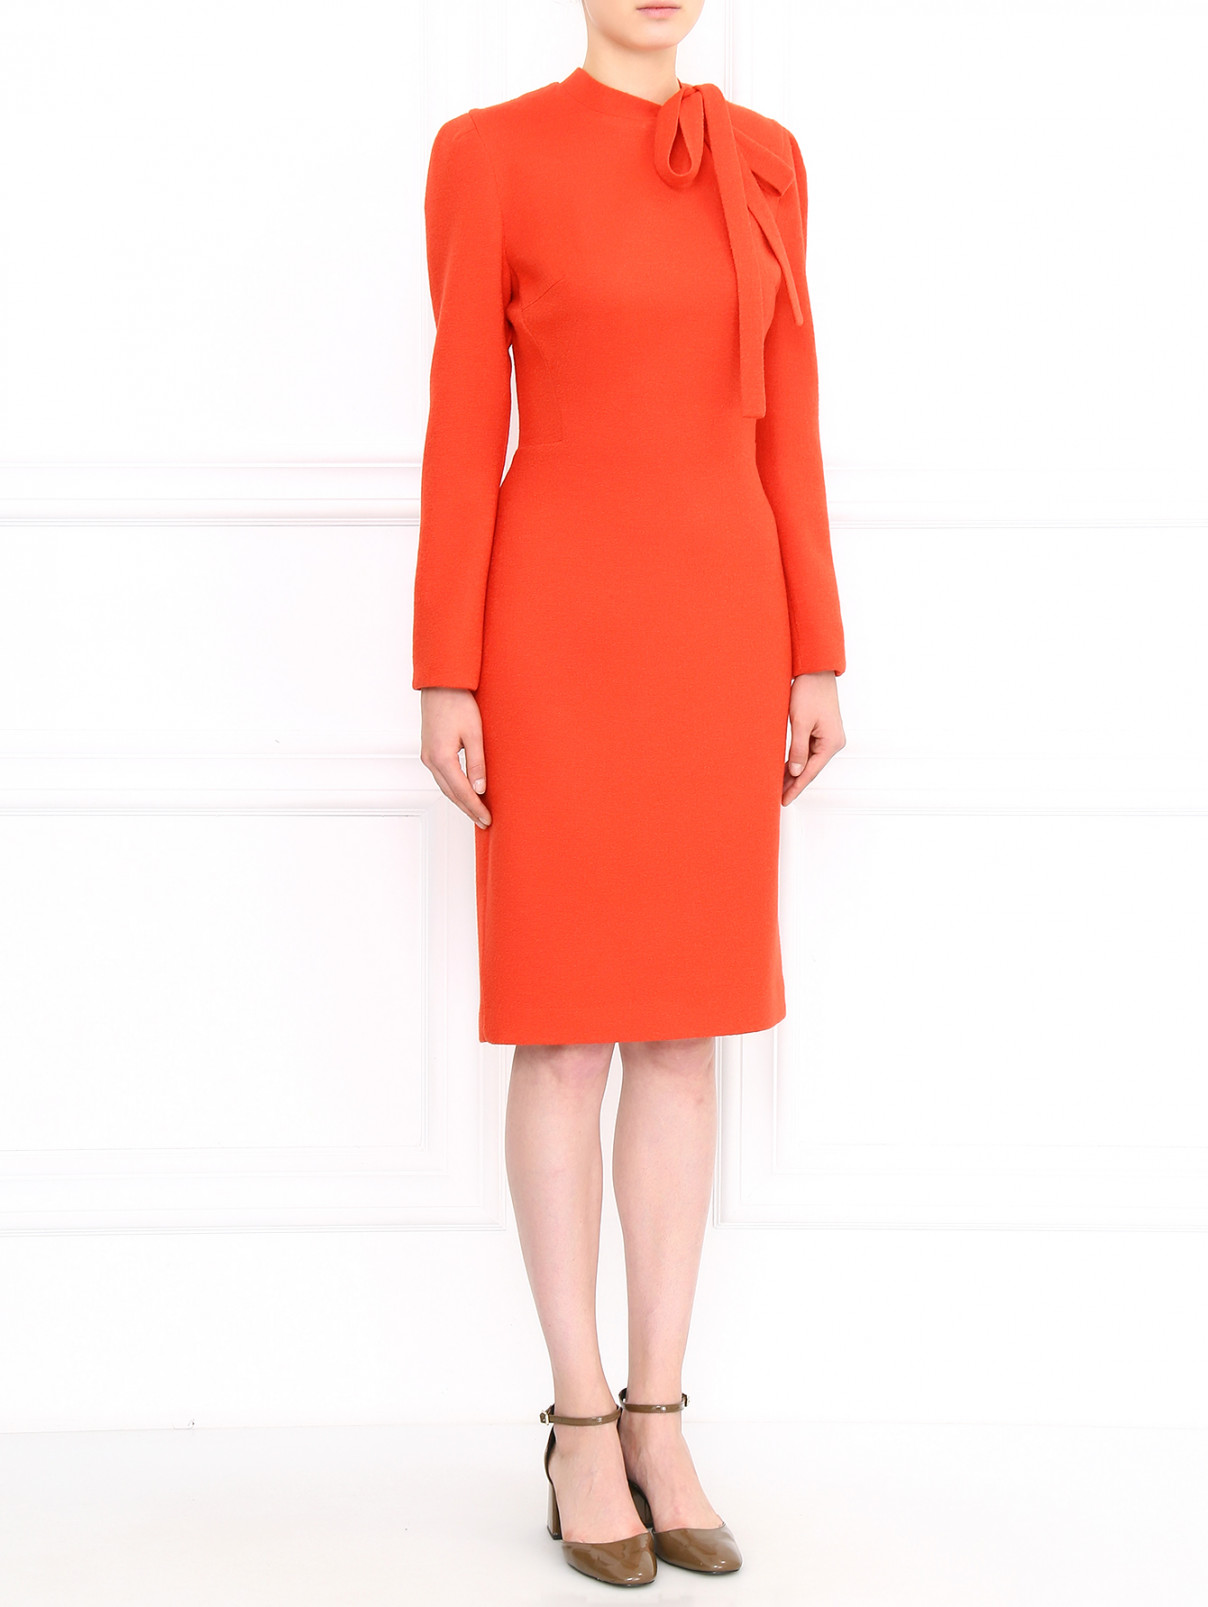 Платье-футляр из шерсти шелка и кашемира Ermanno Scervino  –  Модель Общий вид  – Цвет:  Оранжевый